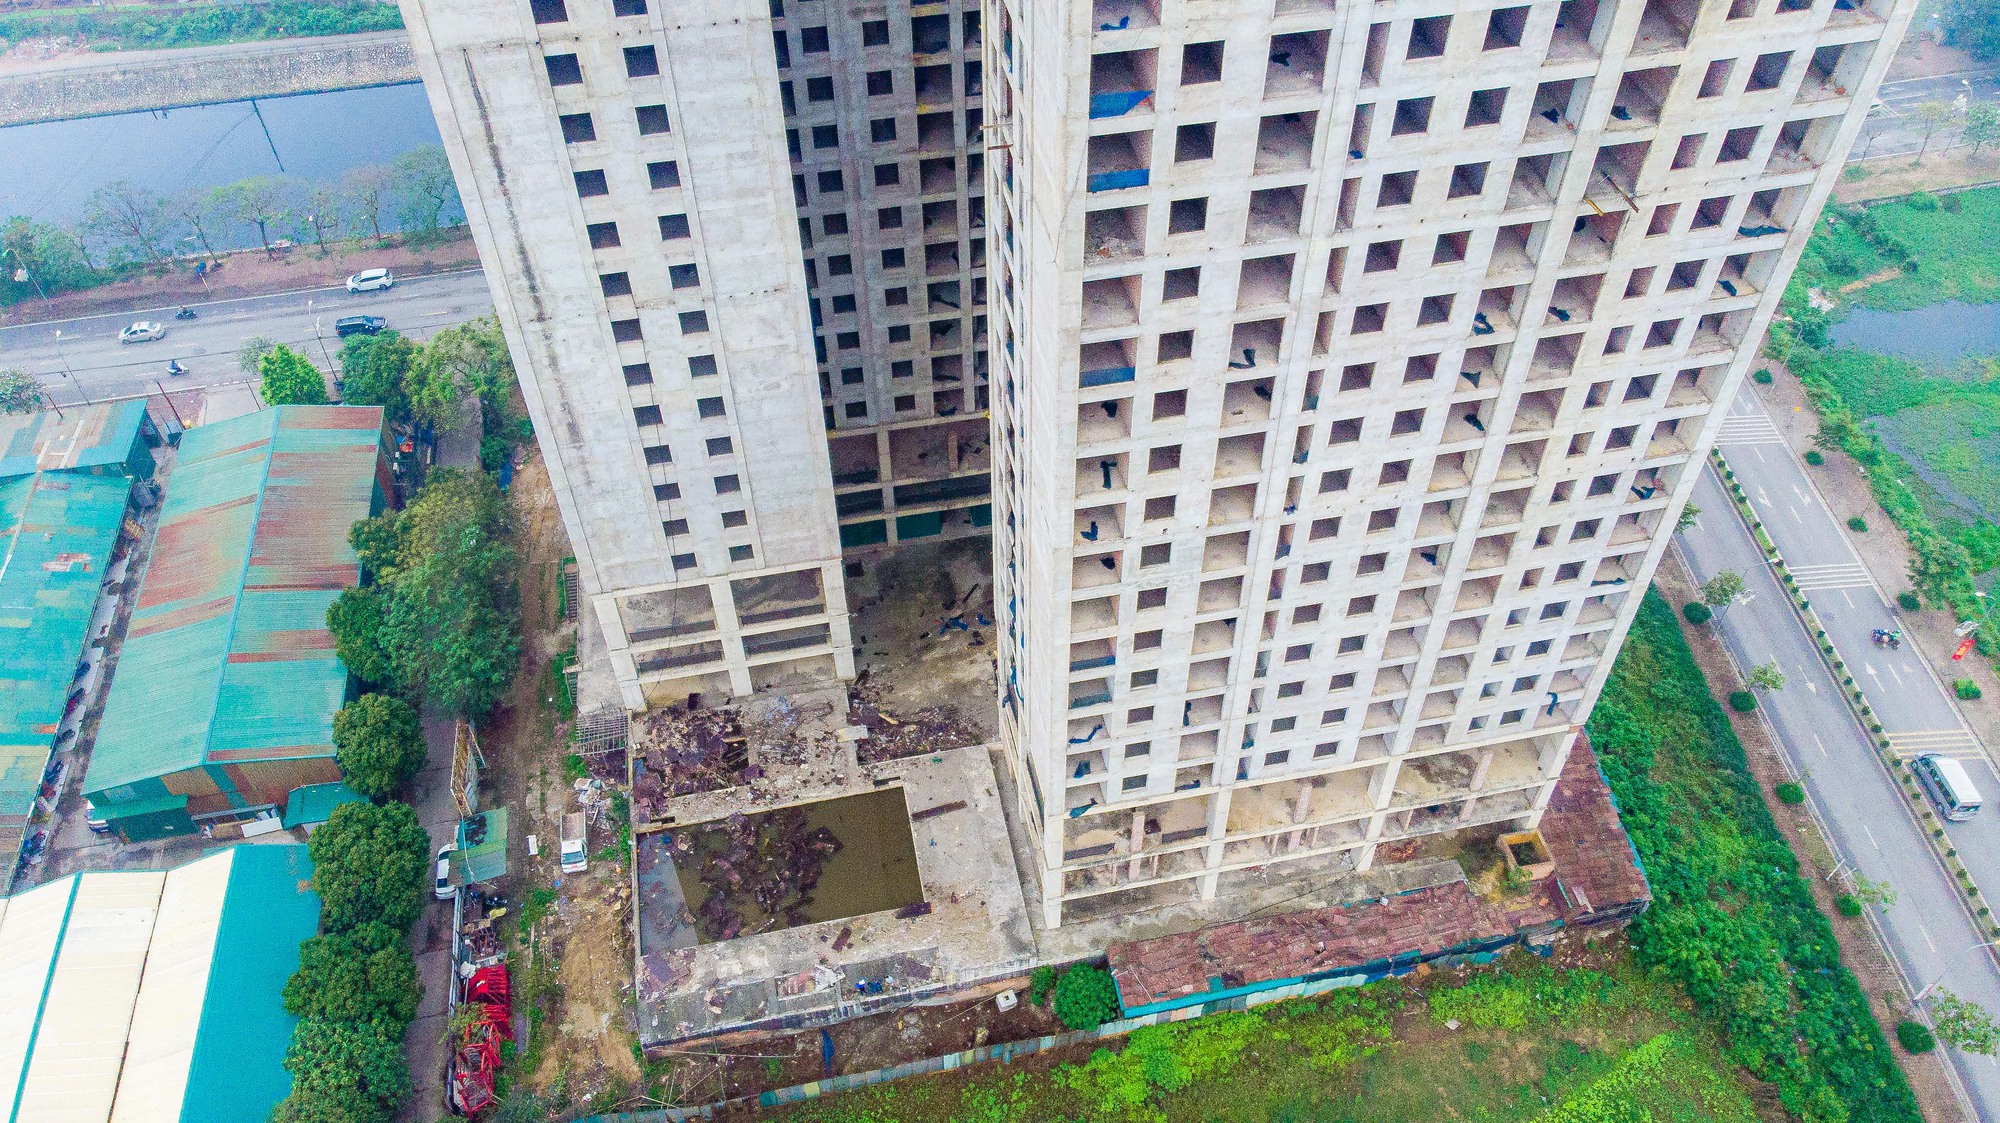 Cận cảnh khối bêtông 25 tầng bỏ hoang trên khu đất đắc địa ở Hà Nội - Ảnh 4.